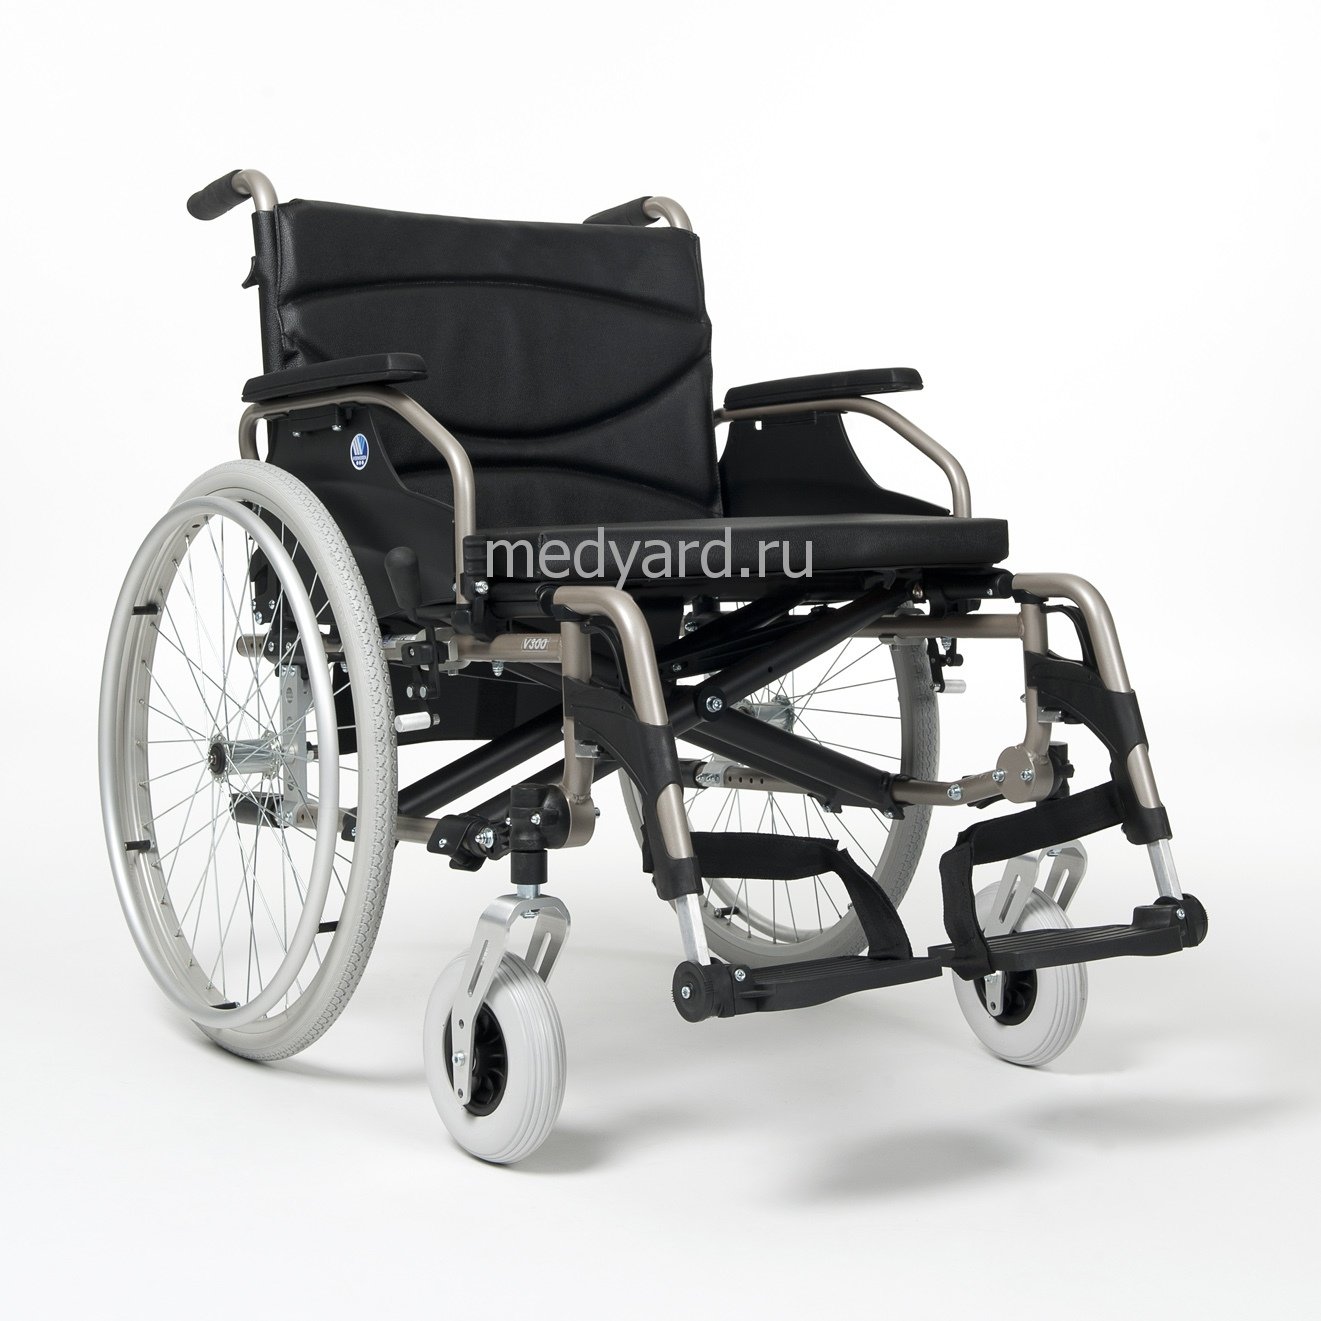 Купить сидение для инвалида. Инвалидная коляска Vermeiren v300. Vermeiren v300 Comfort. Инвалидная коляска Вермейрен v300 комфорт. Кресло-коляска v300 Сomfort.